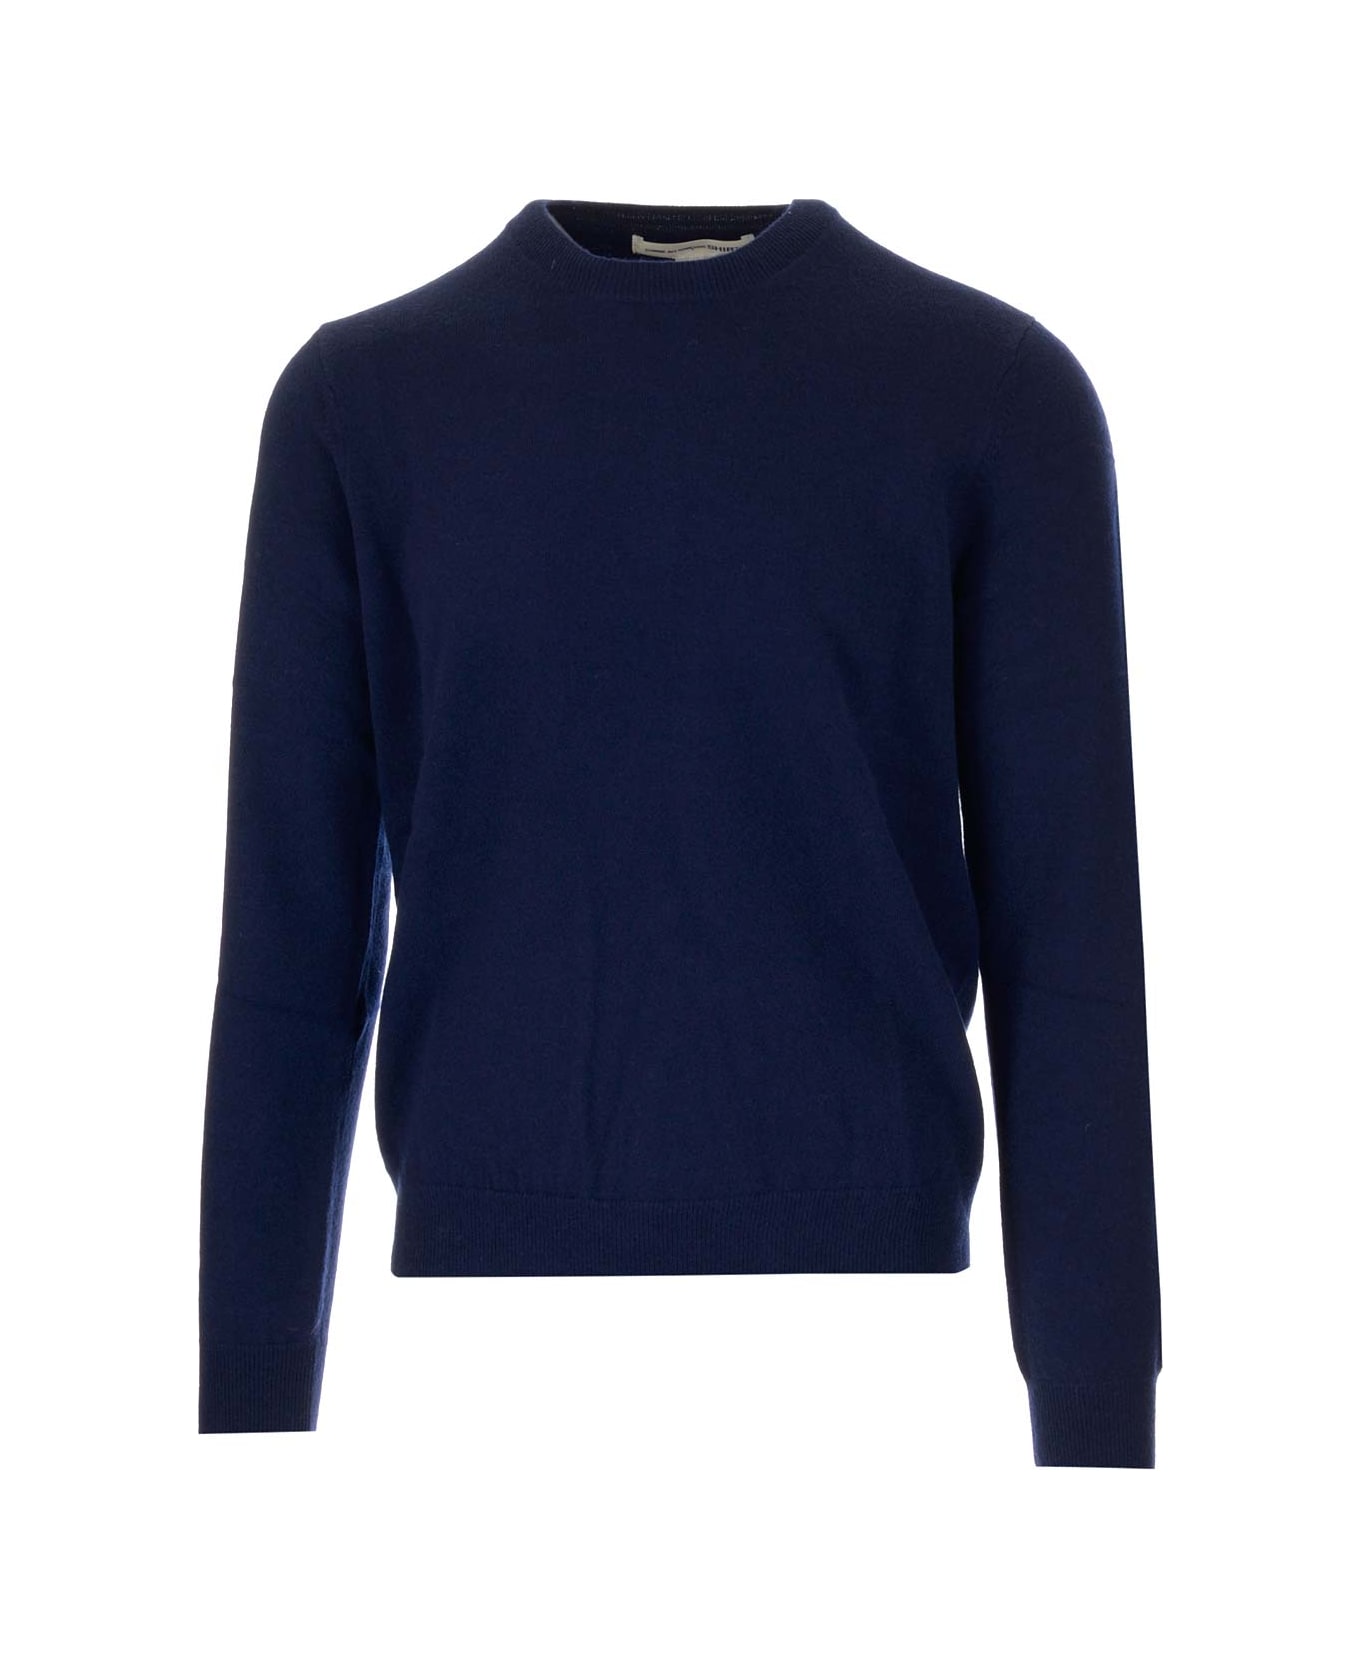 Comme des Garçons Shirt Blue Crewneck Sweater - NAVY ニットウェア